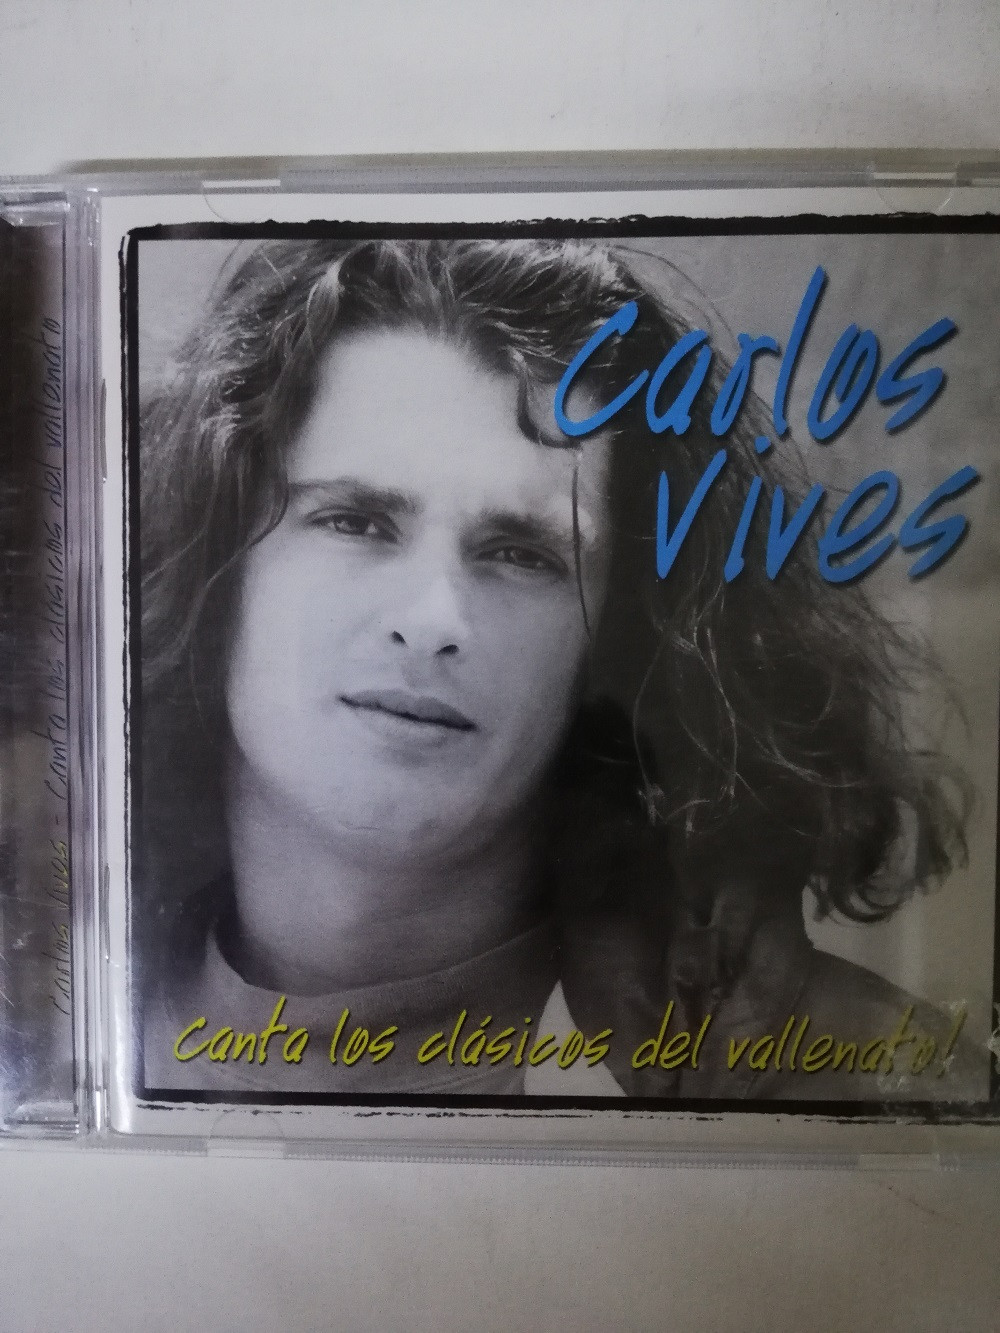 Imagen CD CARLOS VIVES - CANTA LOS CLÁSICOS DEL VALLENATO